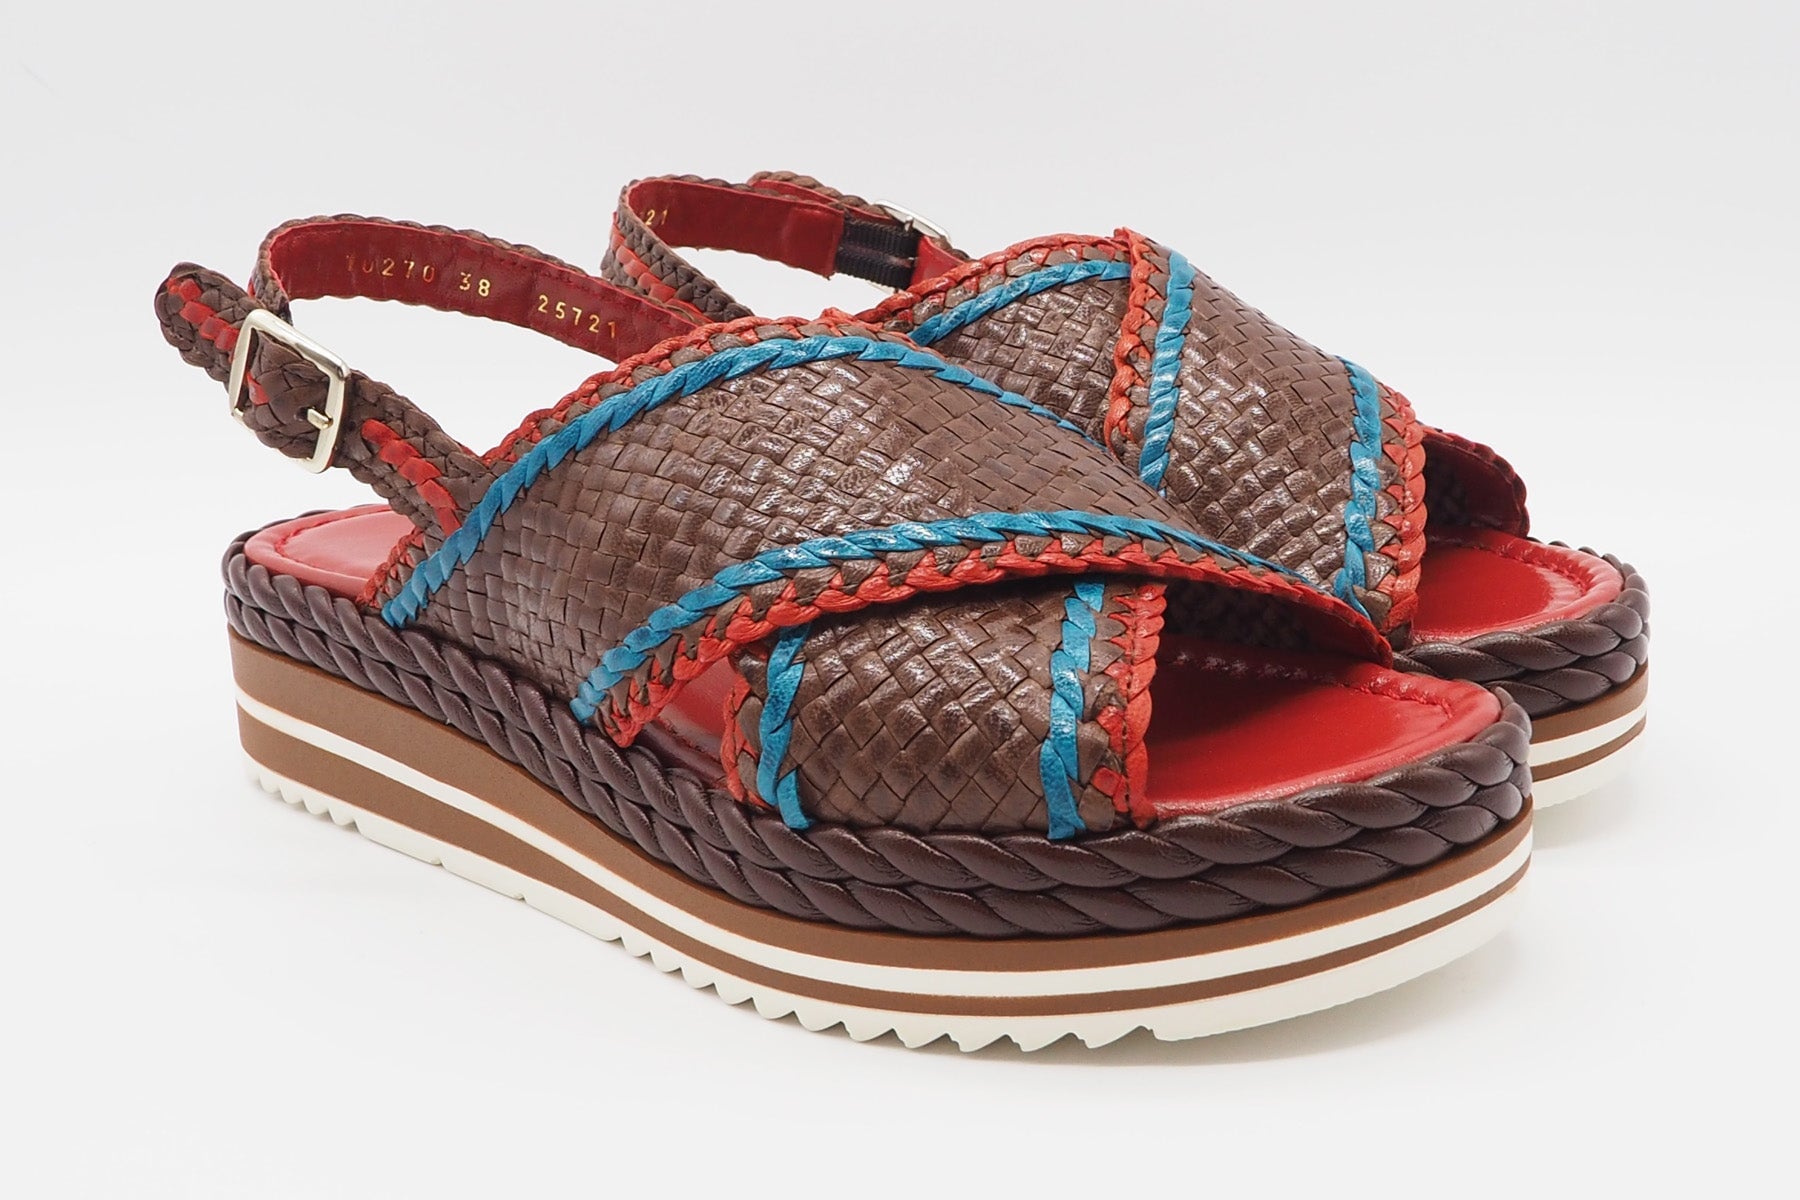 Feine Damen Sandale aus geflochtenem Leder in Braun, Blau & Rot - Absatz 4cm Damen Sandalen Pons Quintana 